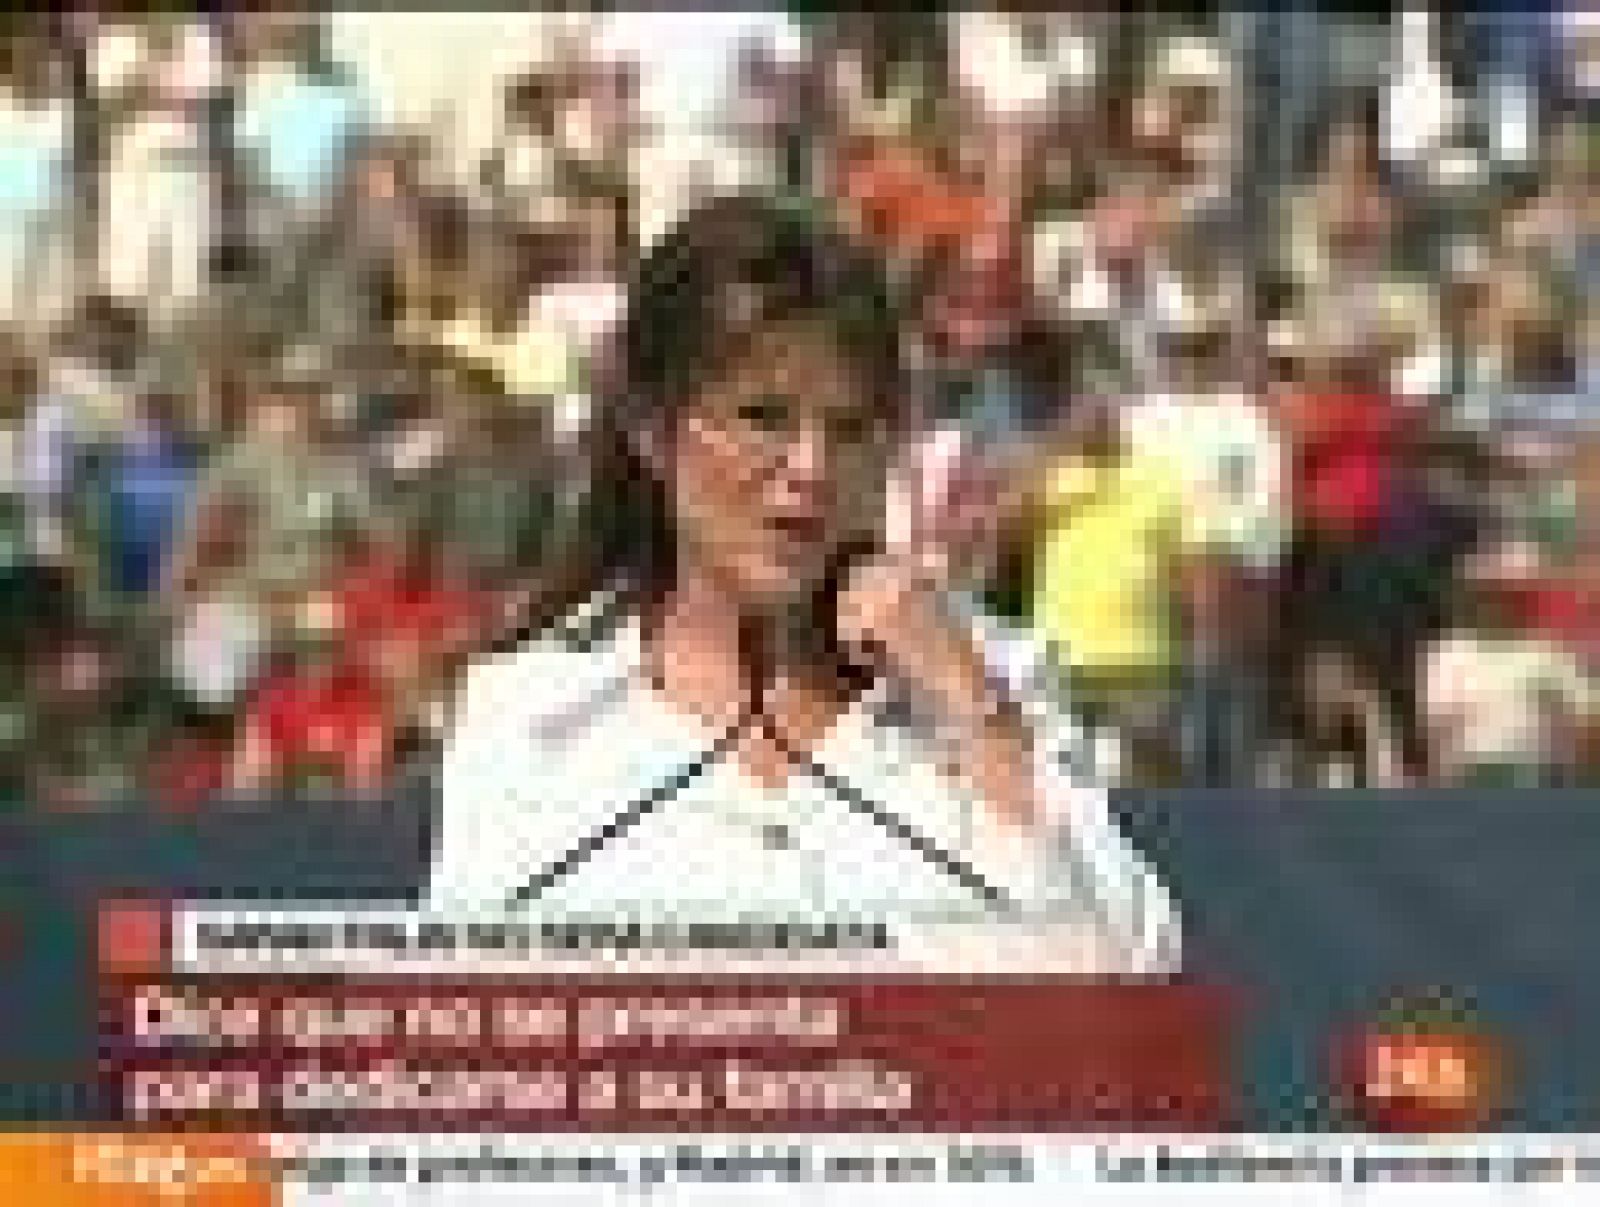  Sarah Palin, exgobernadora de Alaska, ha anunciado que, tras muchas "oraciones" y estudiarlo seriamente, no se postulará a la candidatura presidencial republicana para los comicios de 2012.